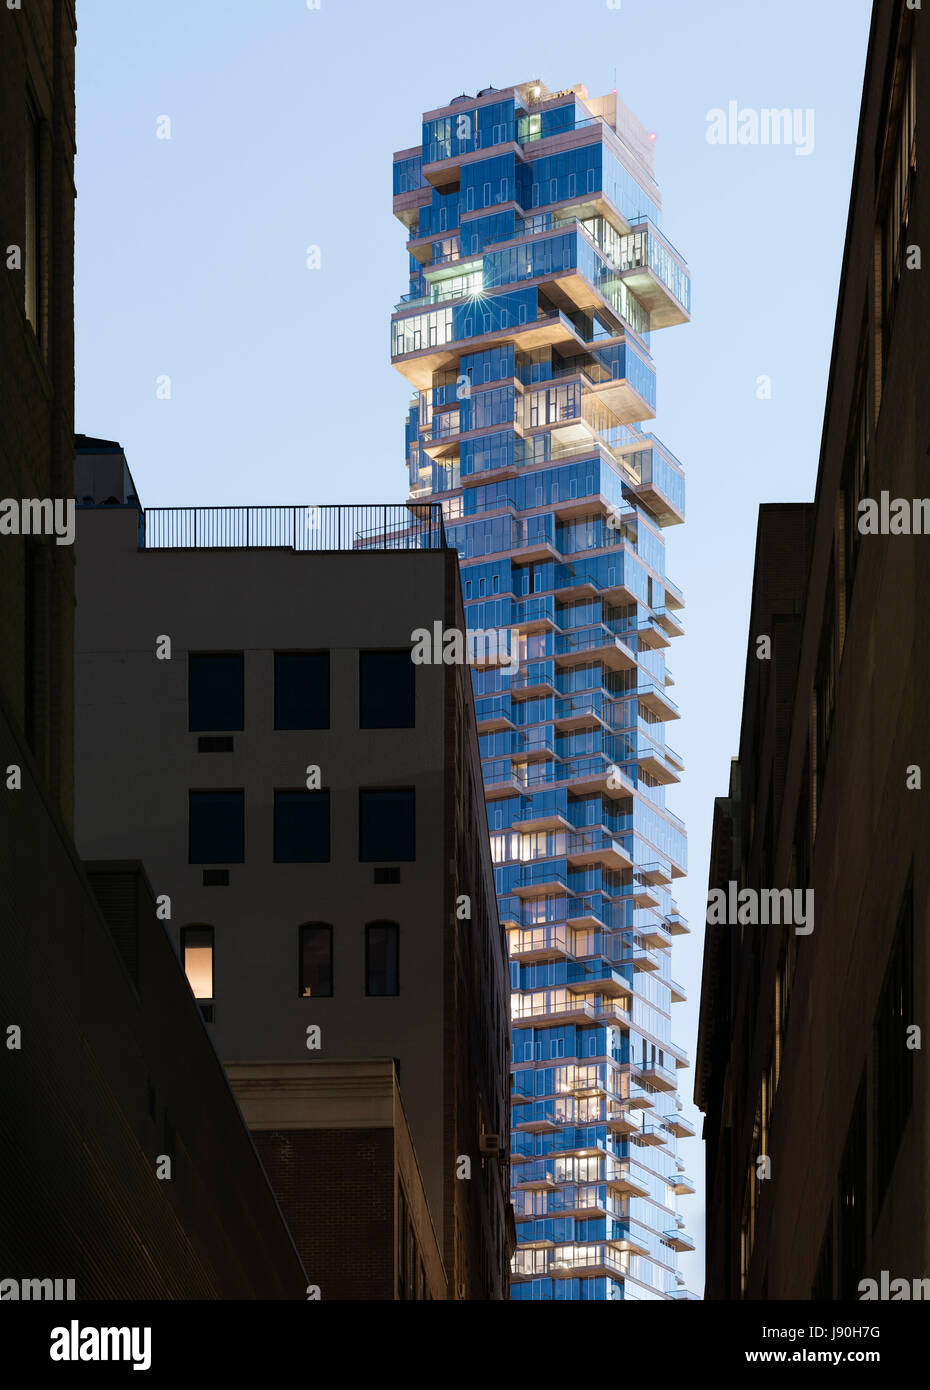 Eine luxuriöse Hochhäuser Turm gesehen aus einer engen Gasse in Tribeca in der Abenddämmerung. 56 Leonard Street, New York, Vereinigte Staaten. Architekt: Herzog + de Meuron, 2017. Stockfoto